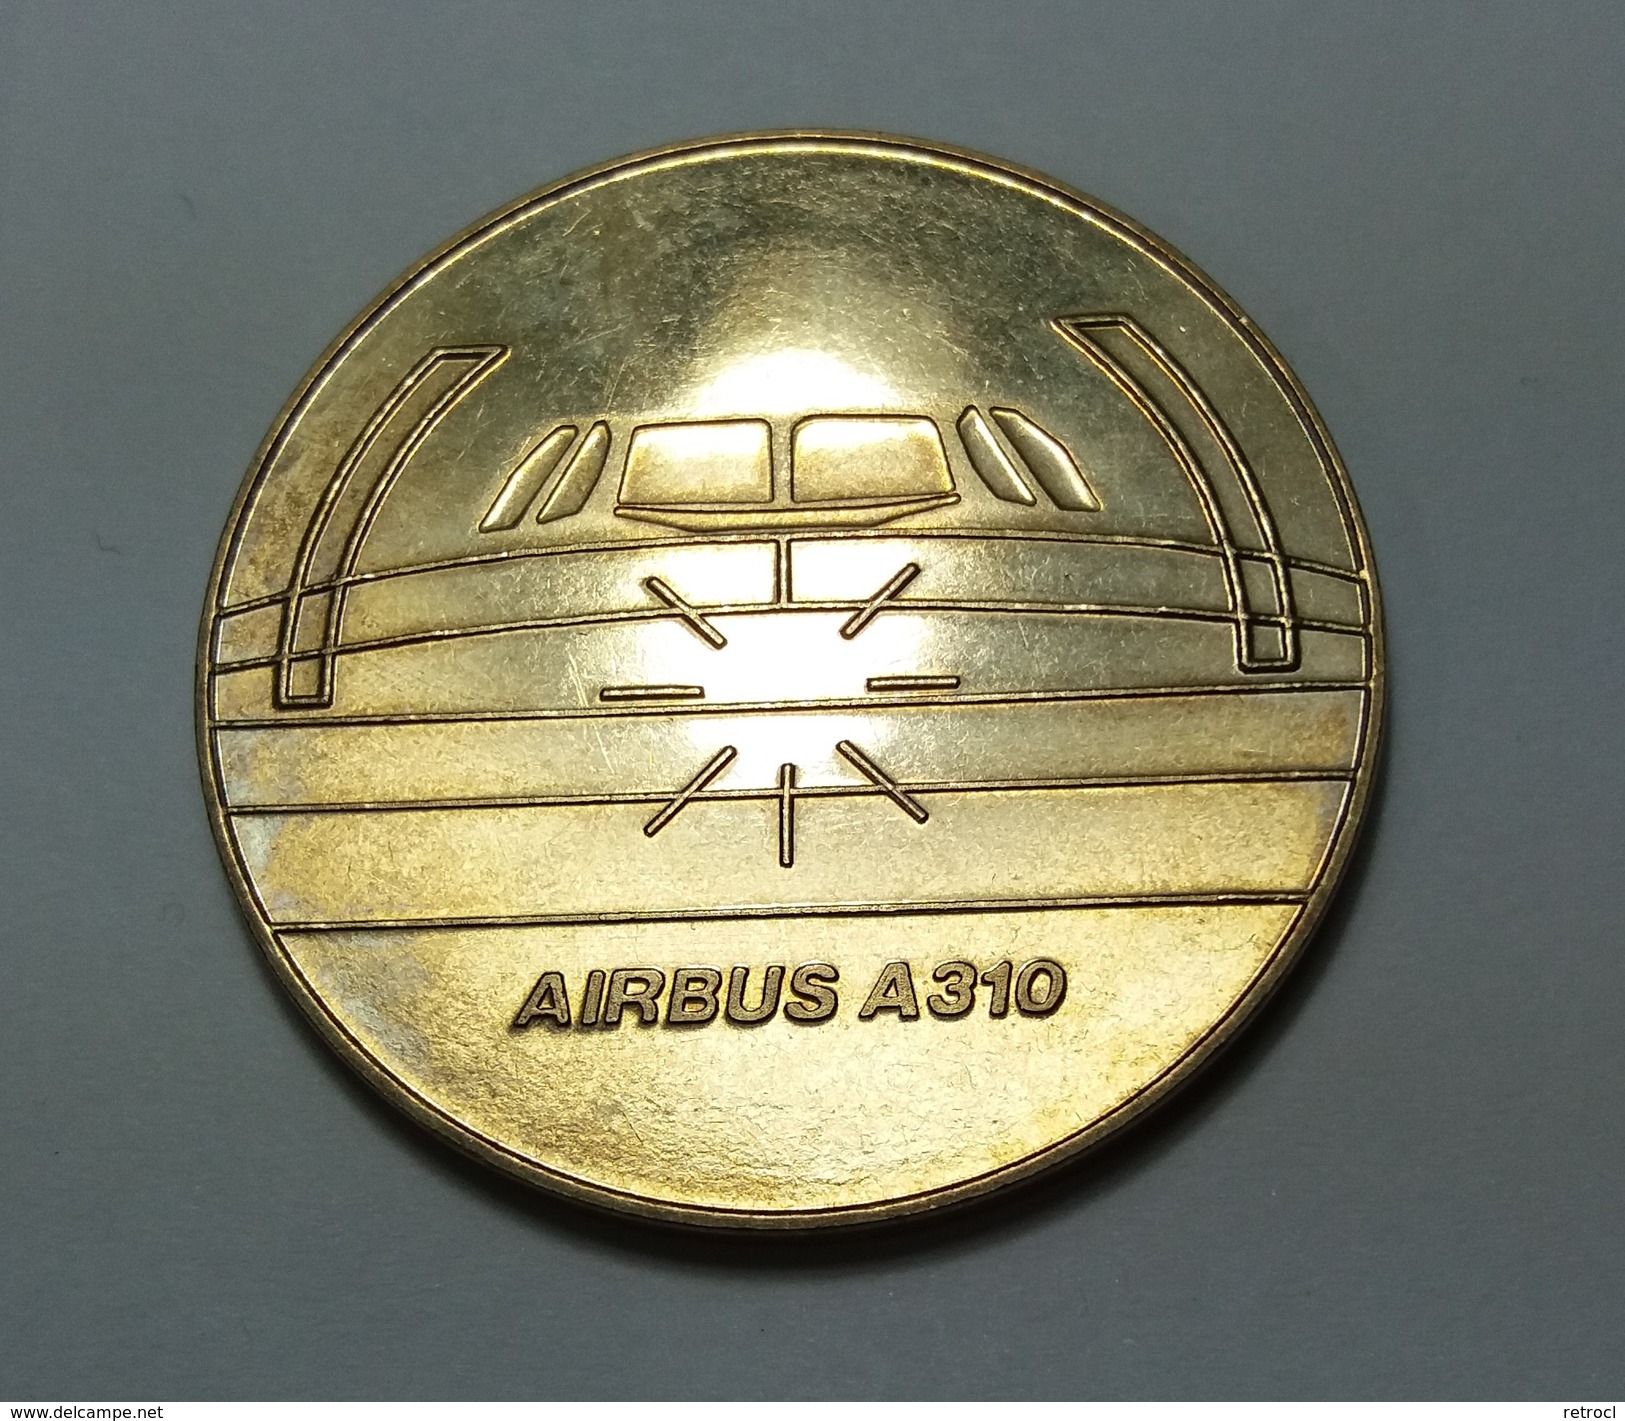 Airbus A310 - Mit Dem Condor Airbus A310 - Zur Erinnerung An Ihren Flug - Professionals/Firms